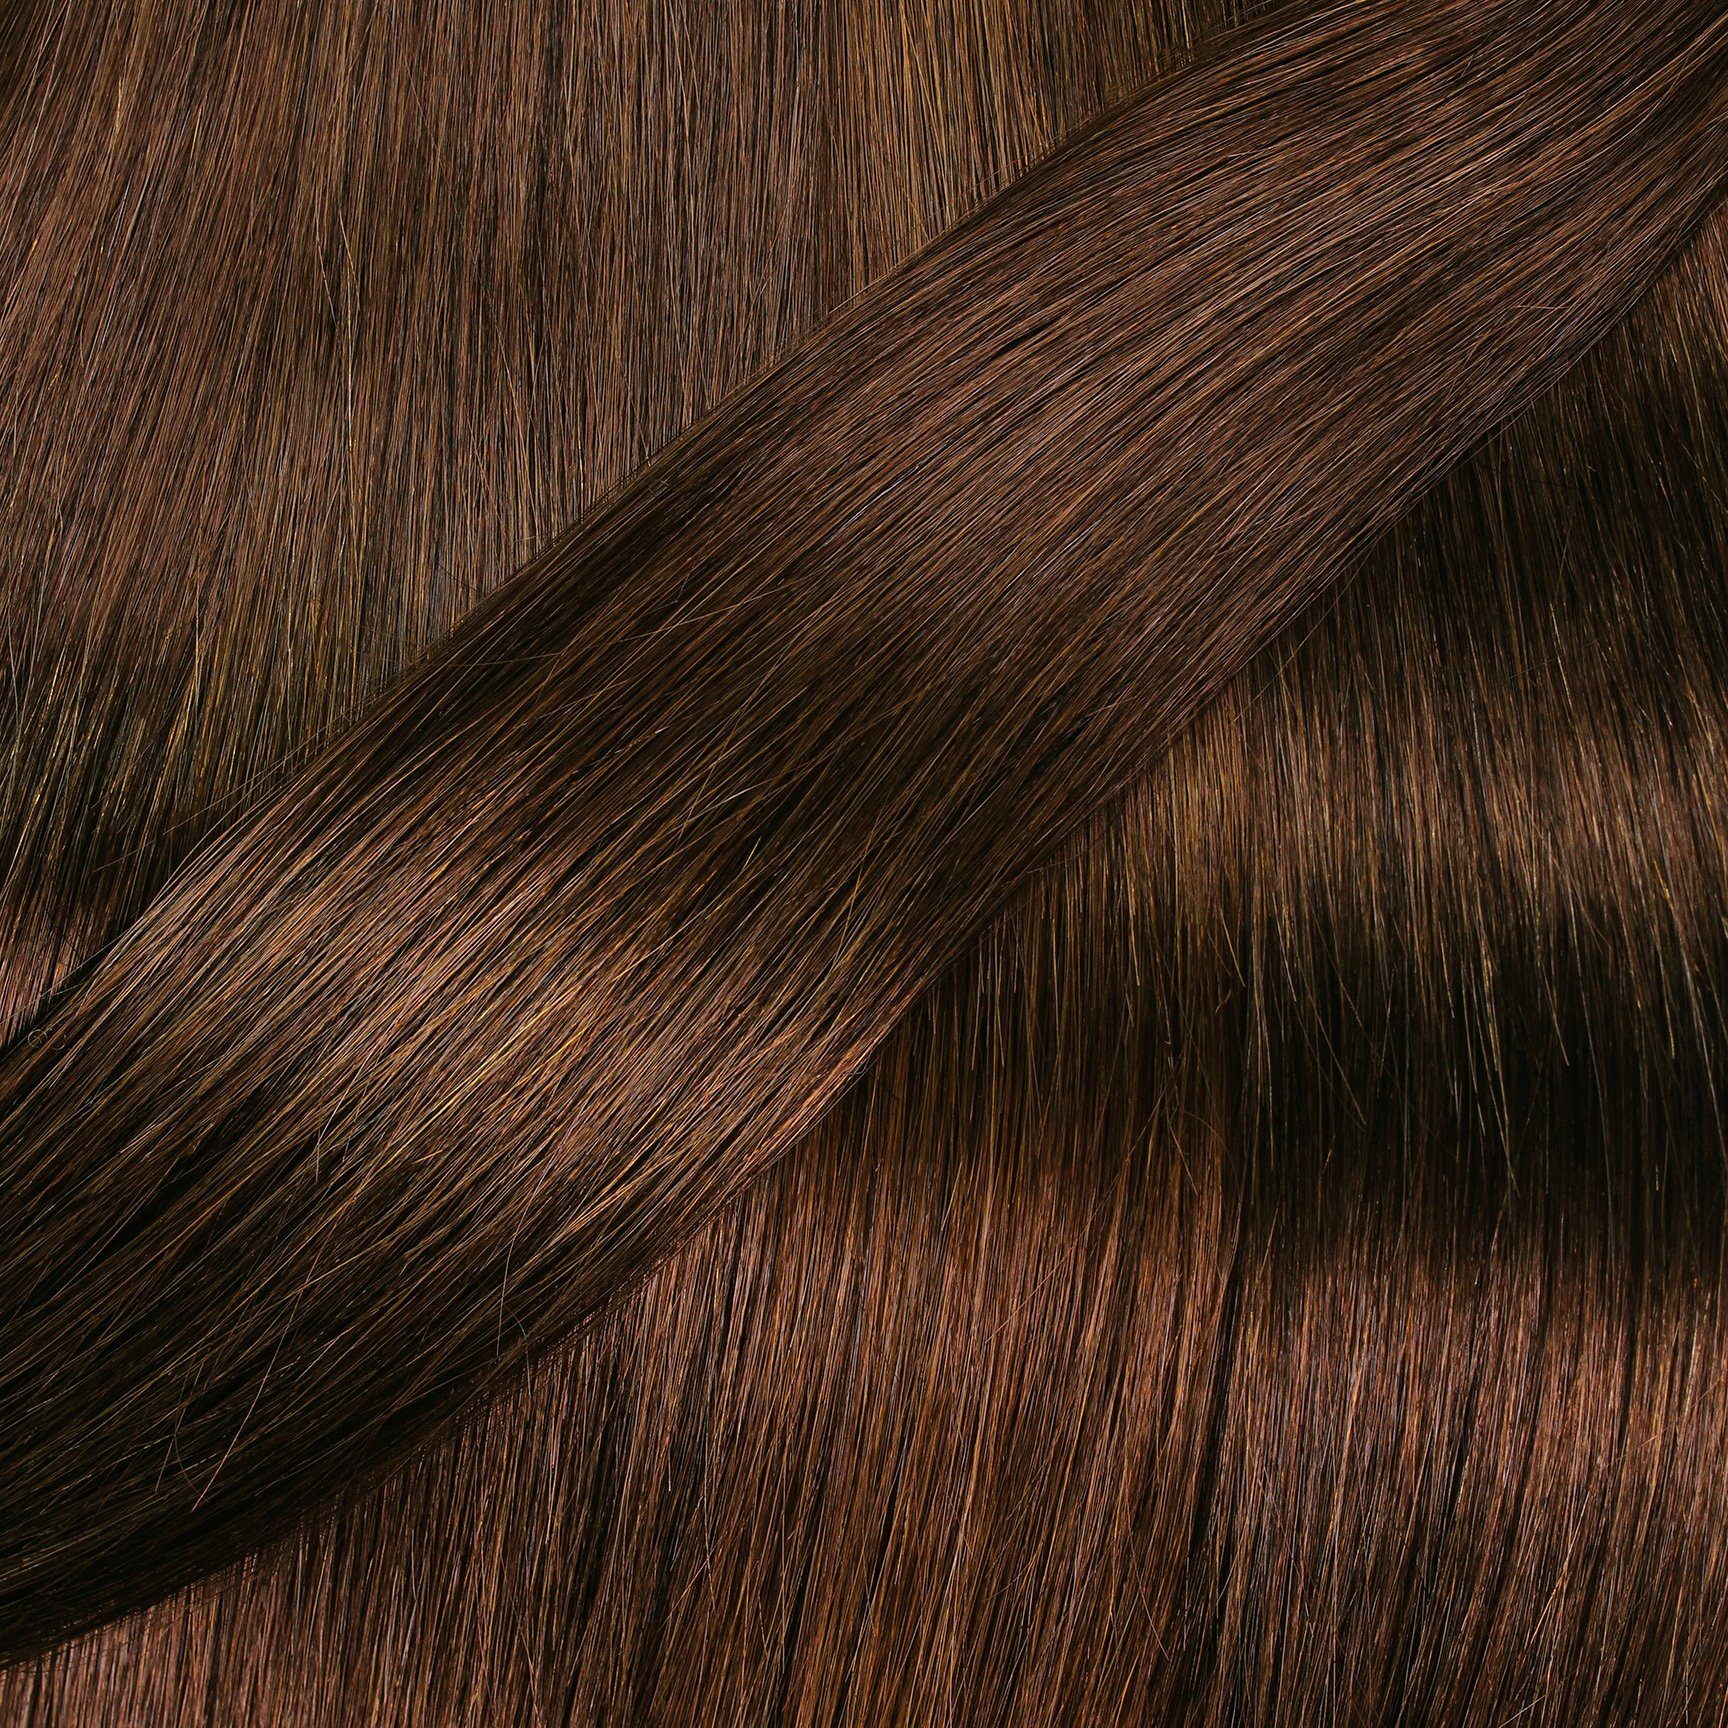 hair2heart Echthaar-Extension Gold Seamless 40cm Clip Extensions Dunkelblond #6/3